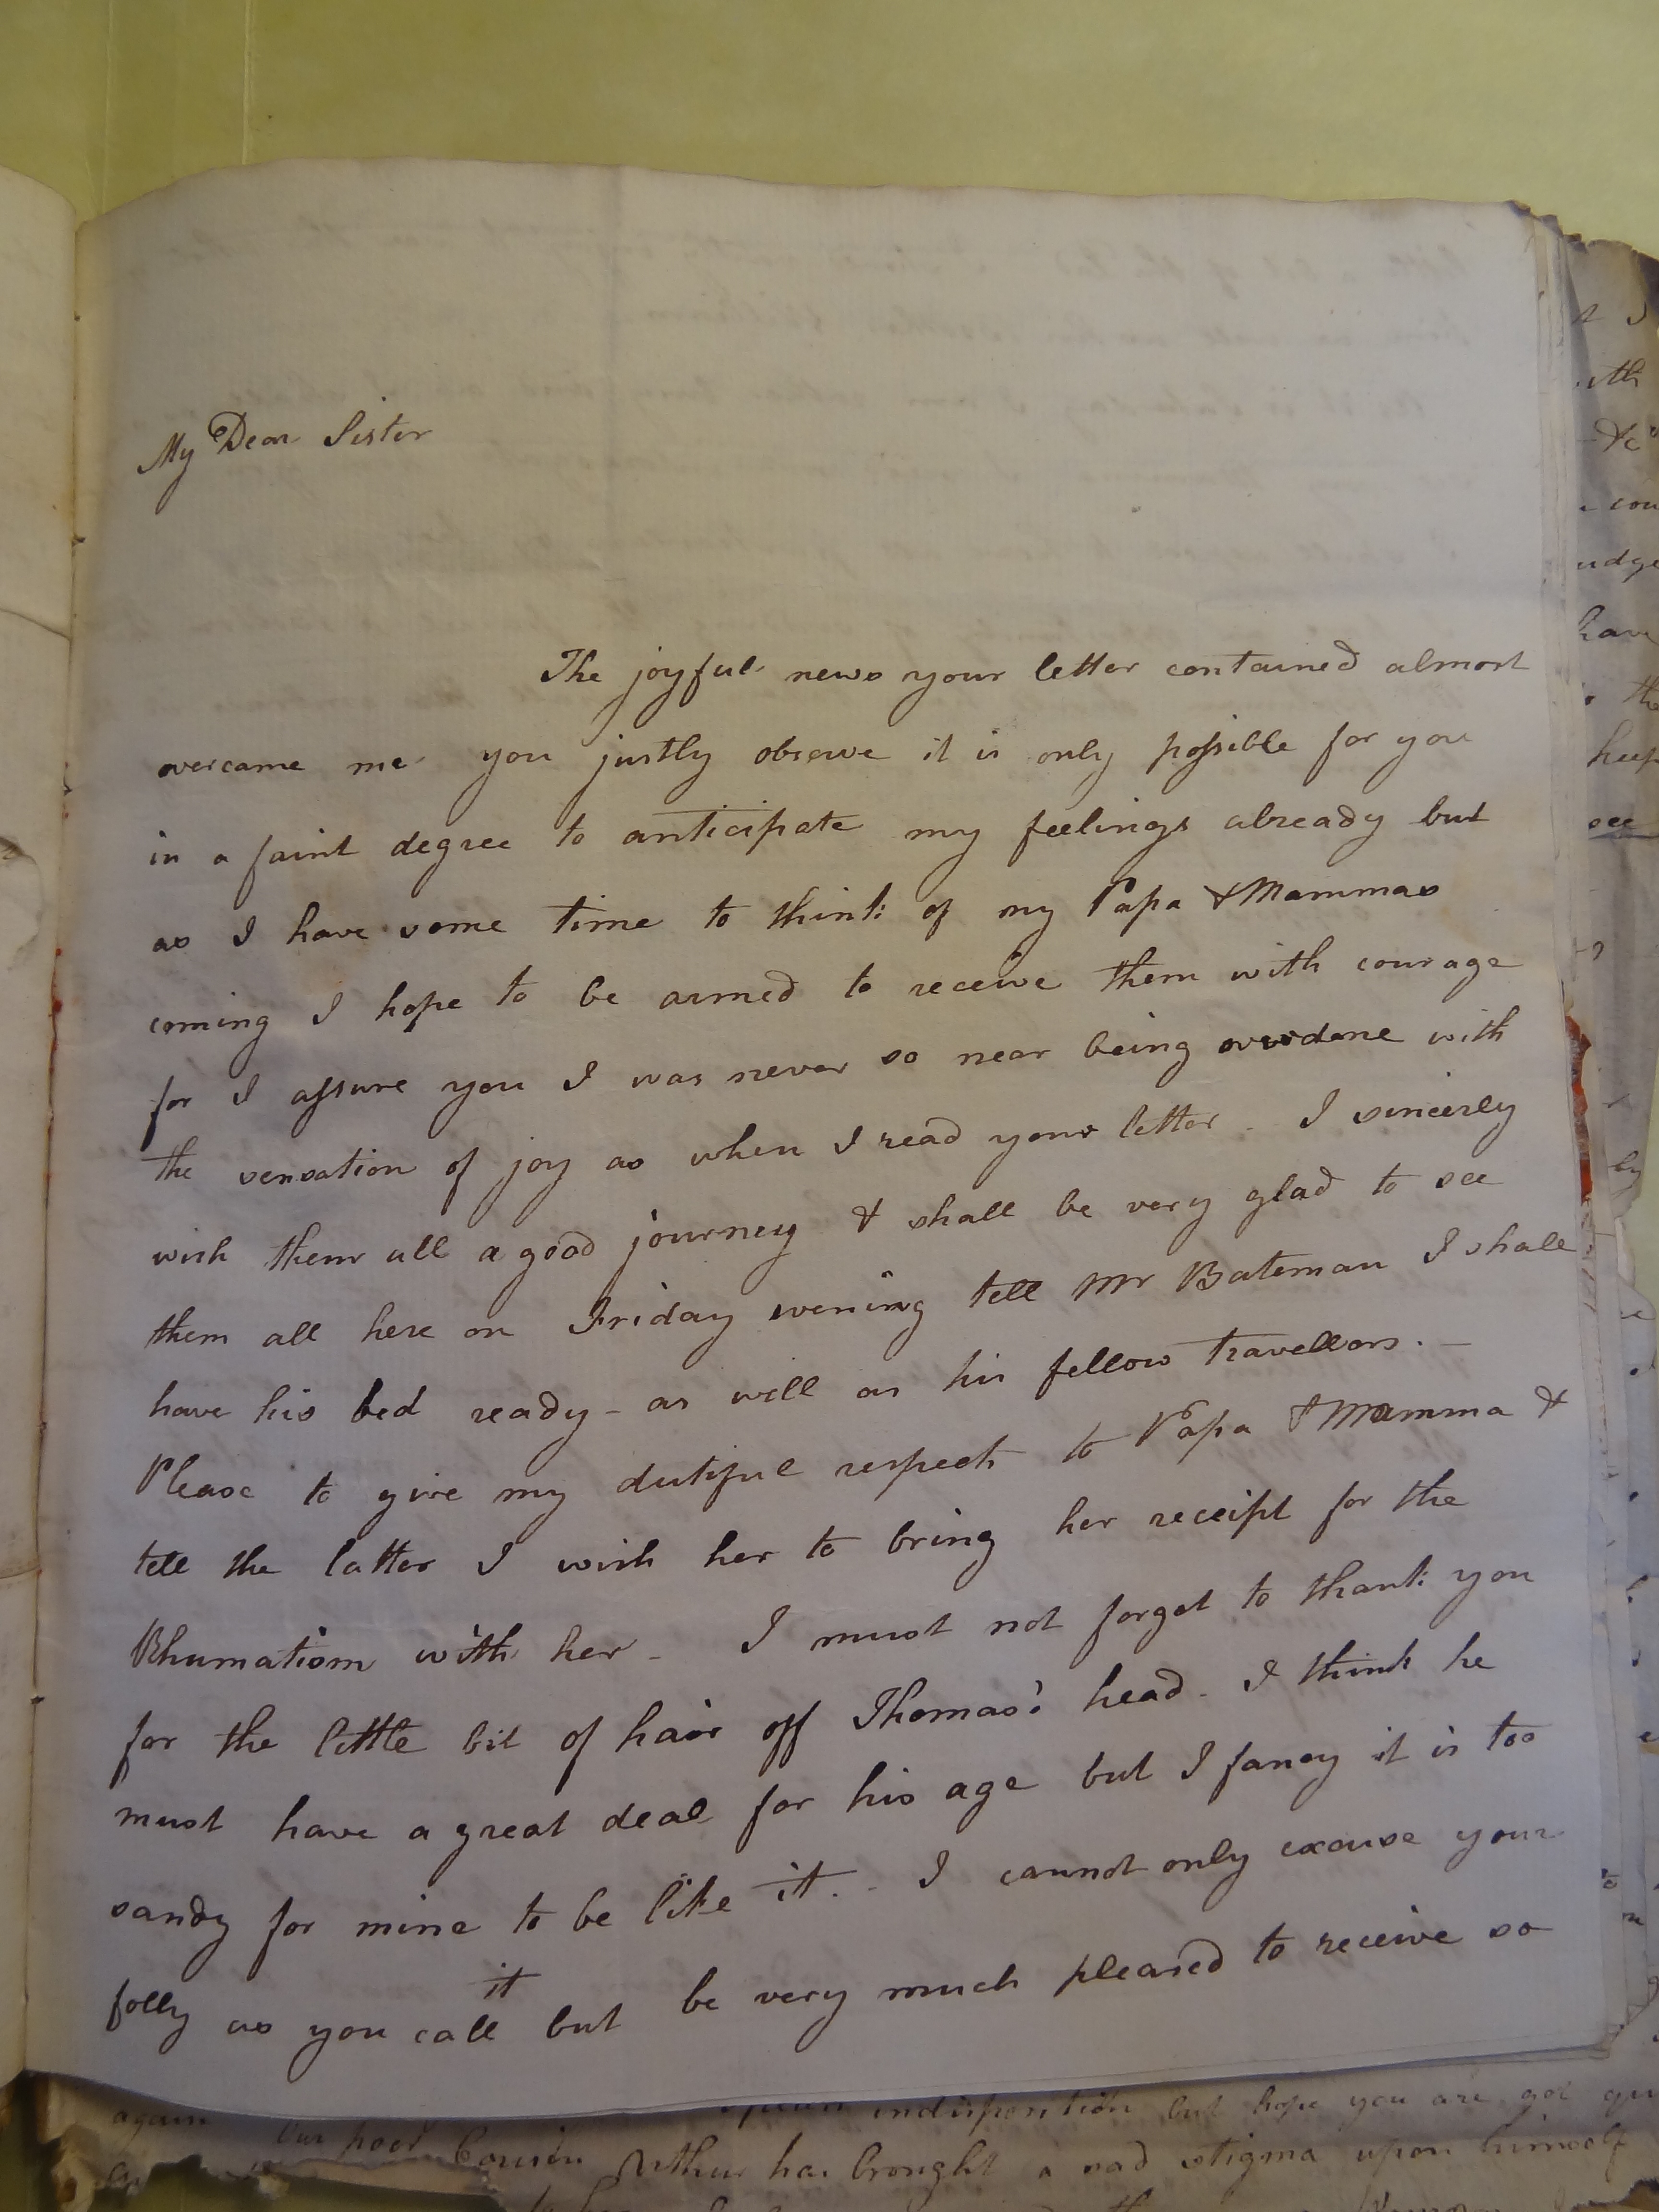 Image #1 of letter: Elizabeth Wilson to Rebekah Bateman, 28 April 1792